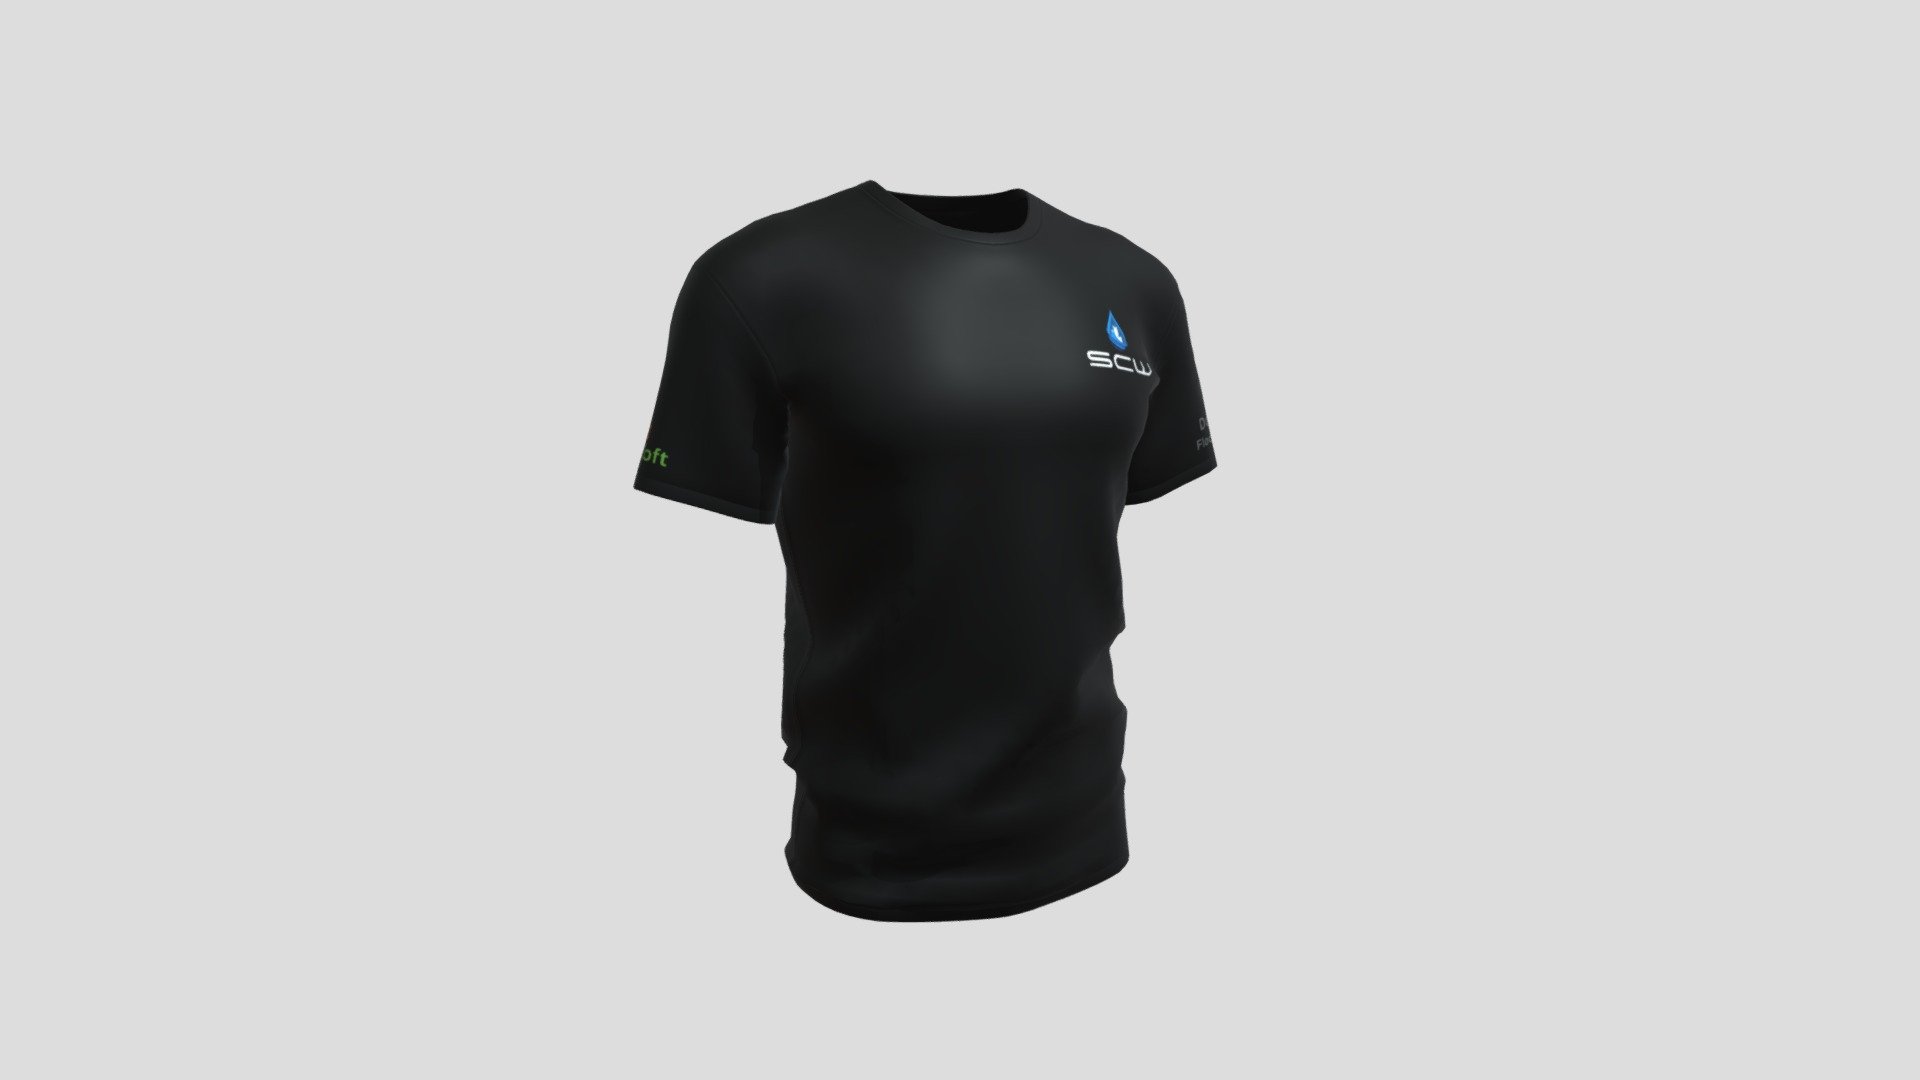 Software Team Man T-shirt